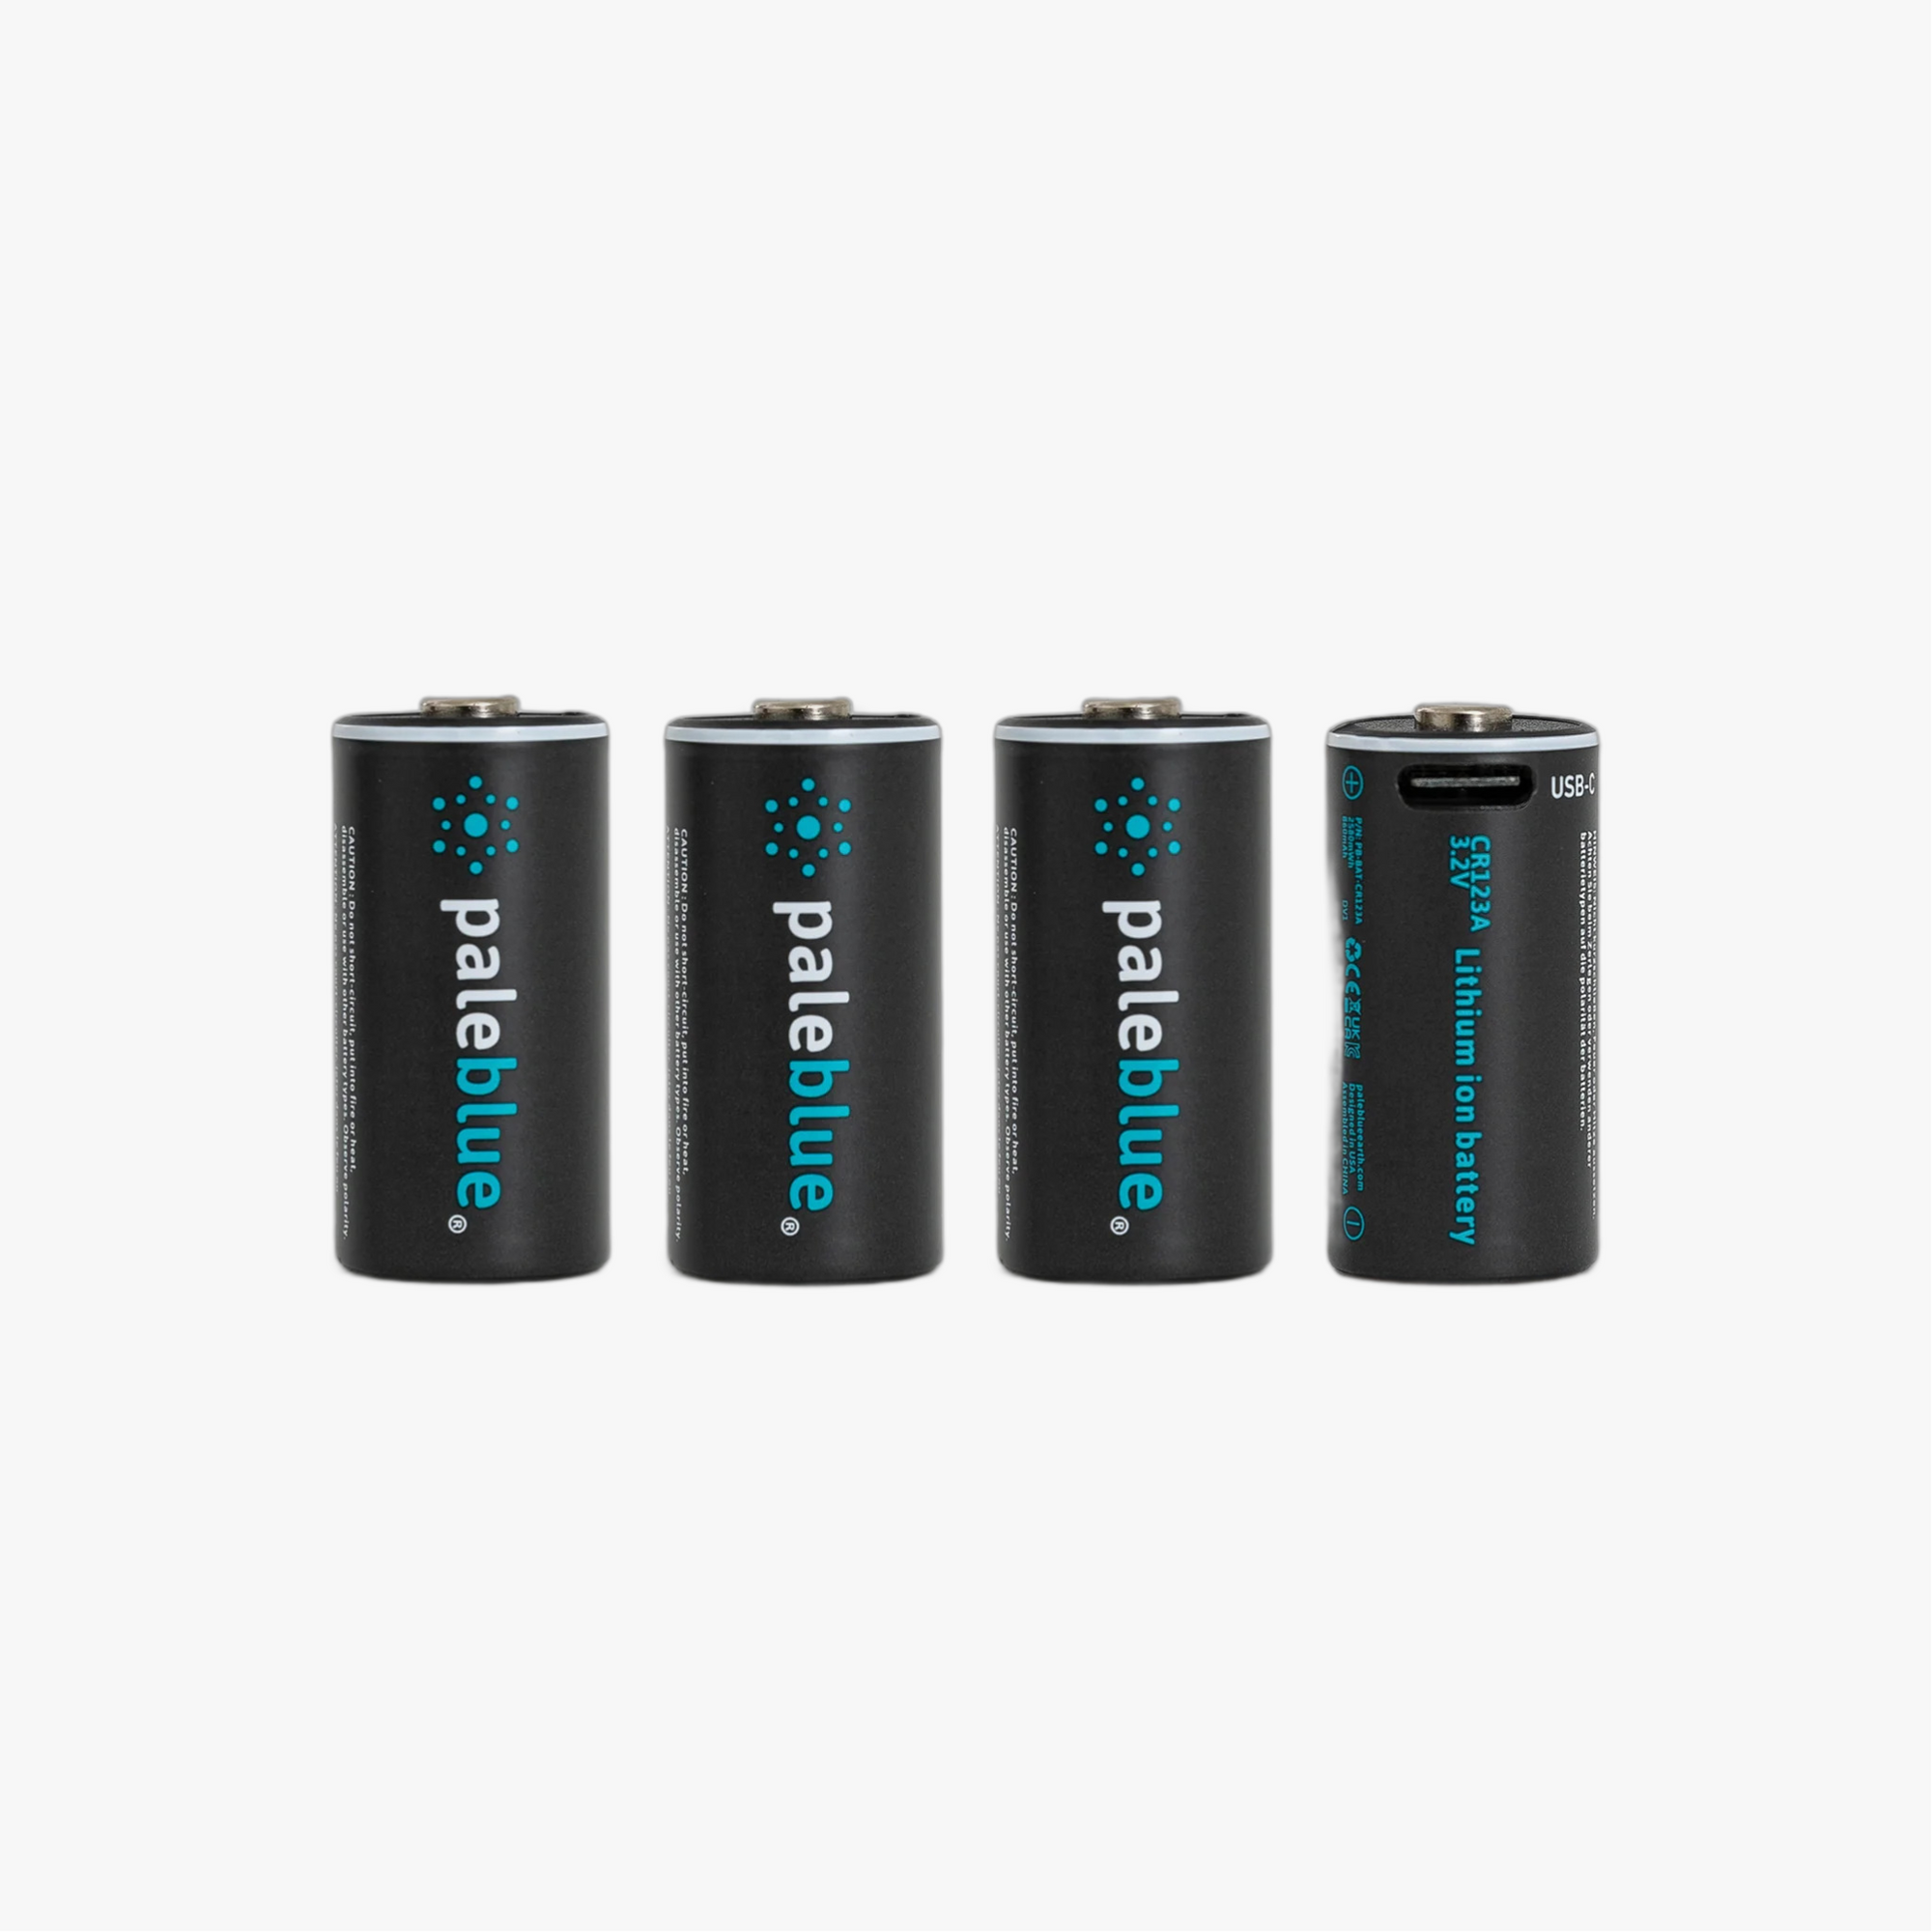 Pile C / LR14 rechargeable par USB : Pile C, LR14, rechargeable - Pale Blue